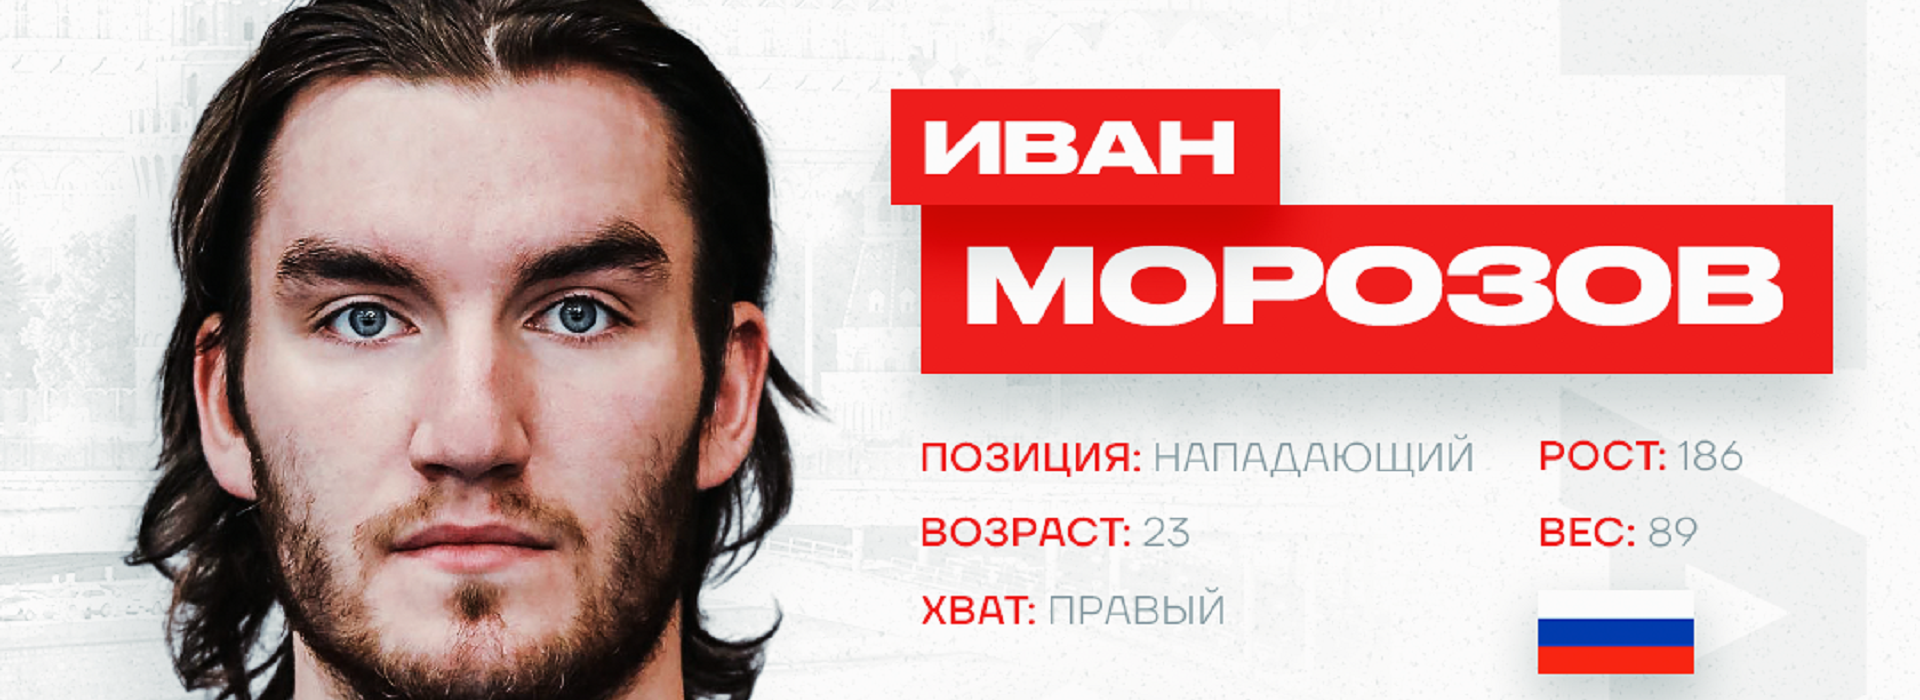 Иван Морозов продолжит карьеру в «Спартаке»